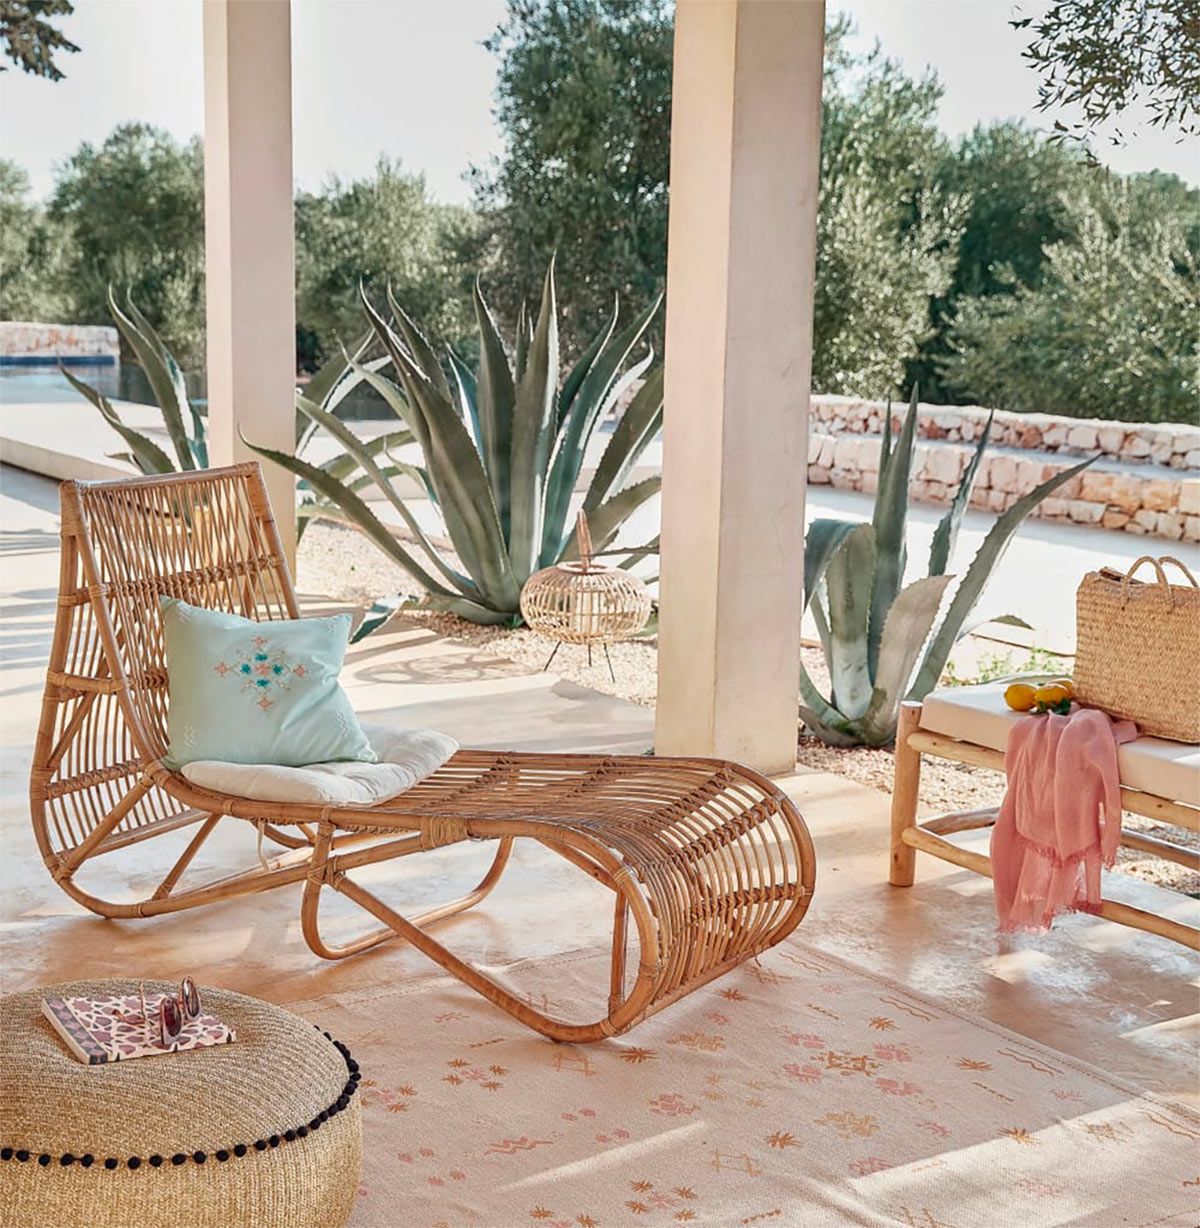 Hamacas, sillones y tumbonas de jardín perfectas para la siesta